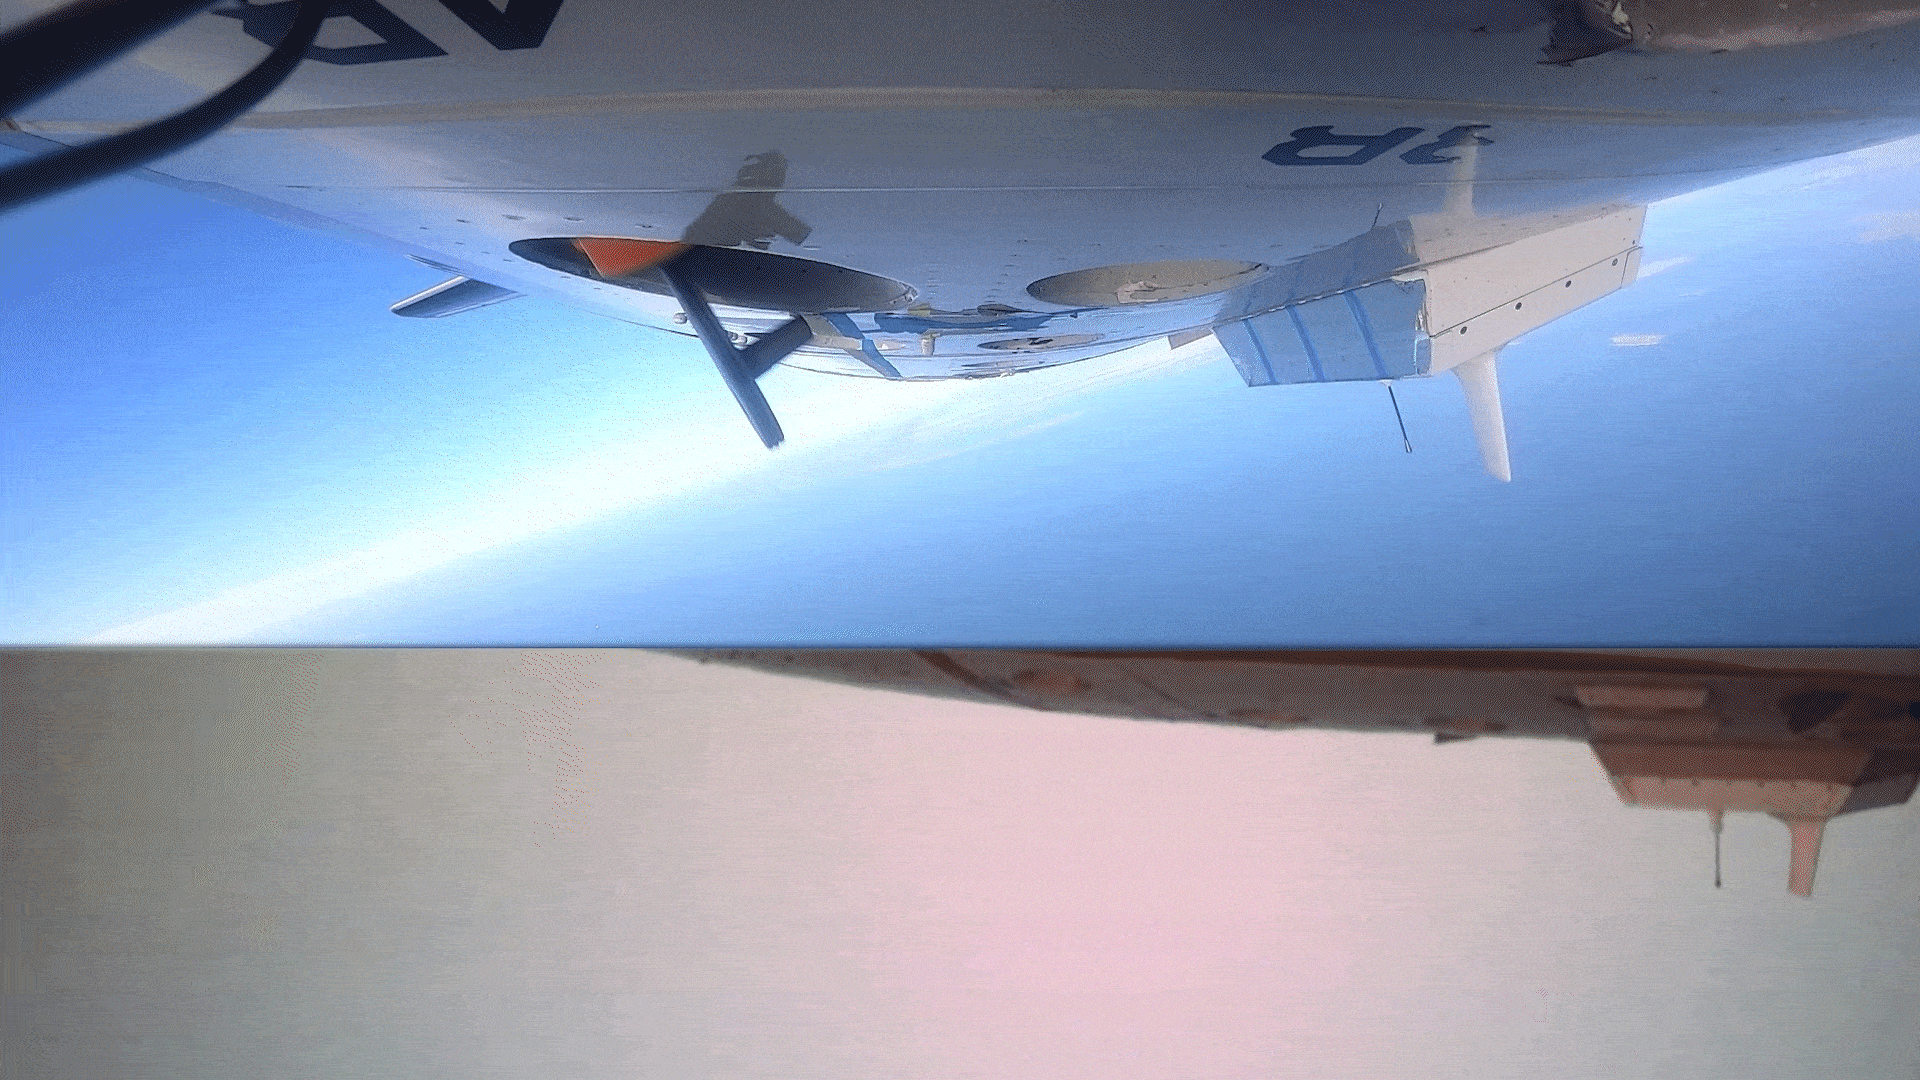 Gif animado que muestra un avión no tripulado Altius siendo liberado de la parte inferior de un avión p-3. Se trata de un cilindro de color naranja con el morro negro, que se suelta primero por la parte trasera. Al salir de la aeronave, gira y dos aletas traseras se extienden antes de que abandone la parte inferior del cuadro. El gif está dividido en dos partes: la superior muestra una vista frontal y la posterior una vista de la sonda desde estribor. Estos vehículos de muestreo sin tripulación permiten realizar mediciones más cerca de la superficie del mar, lo que aumenta la capacidad de los investigadores para medir cómo el calor en la superficie del océano sostiene una tormenta y mejora las previsiones de intensidad.